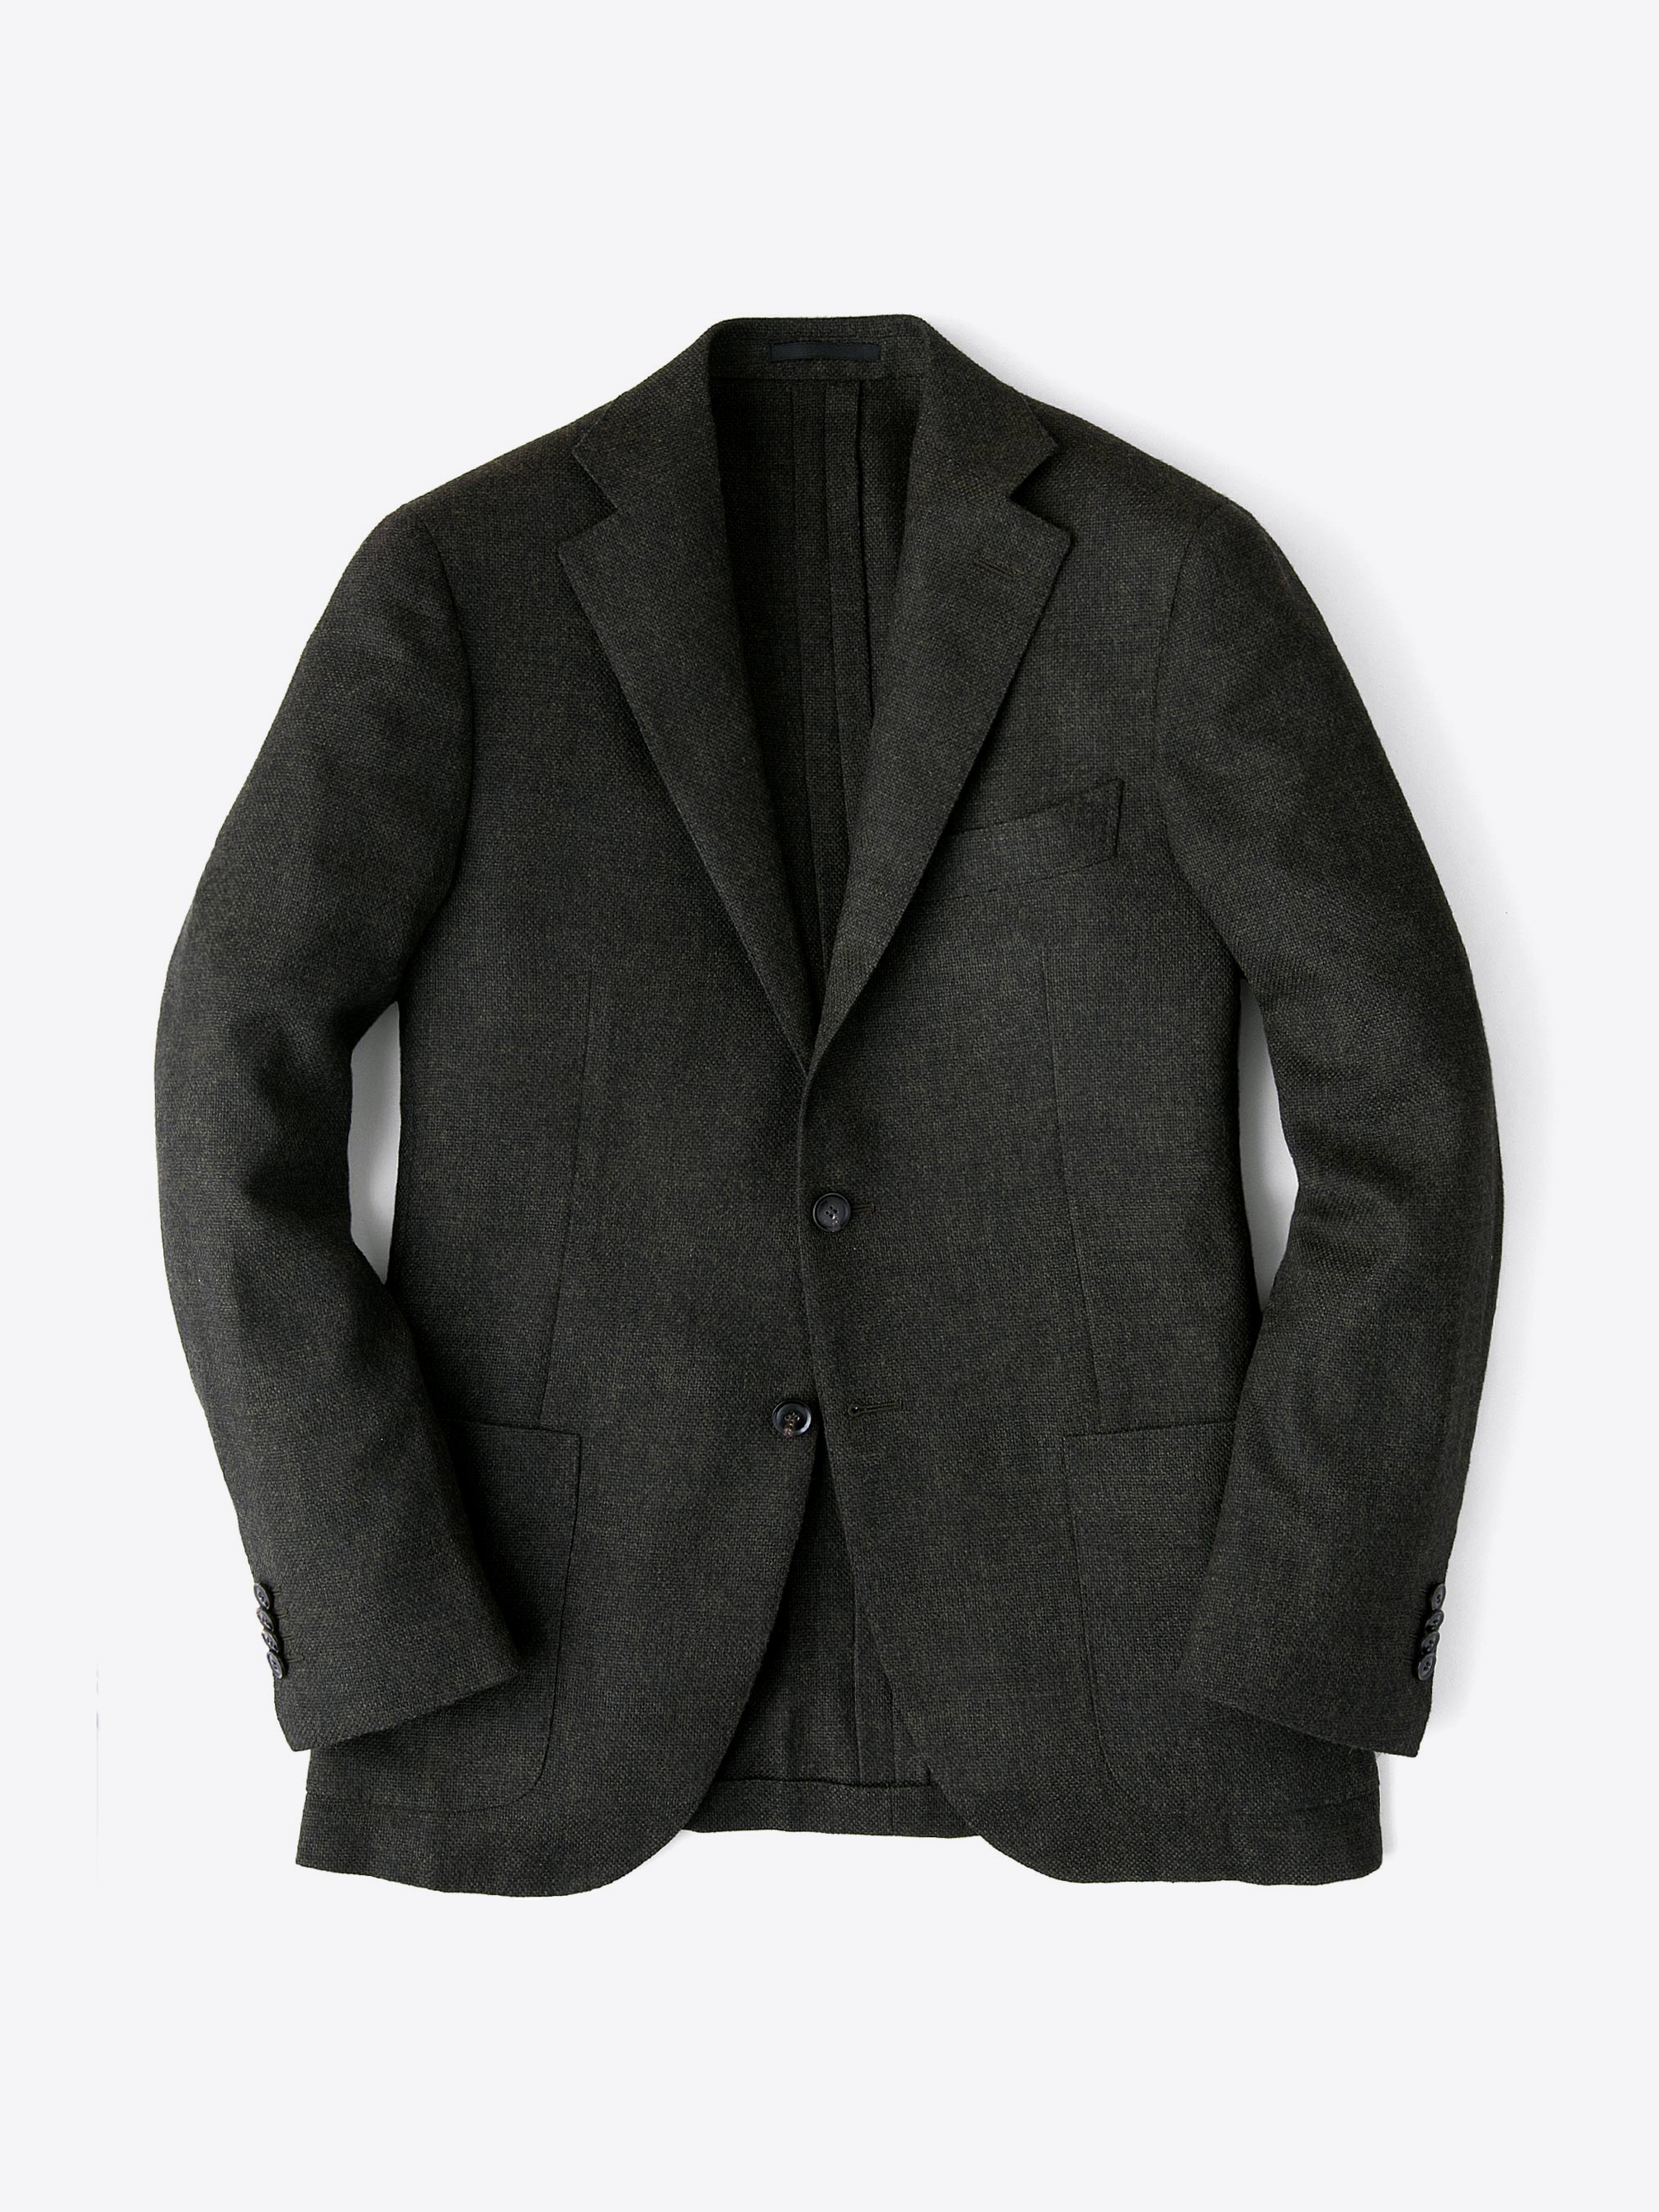 Zoom Image of Forest Wool Cashmere Basketweave Hudson Jacket